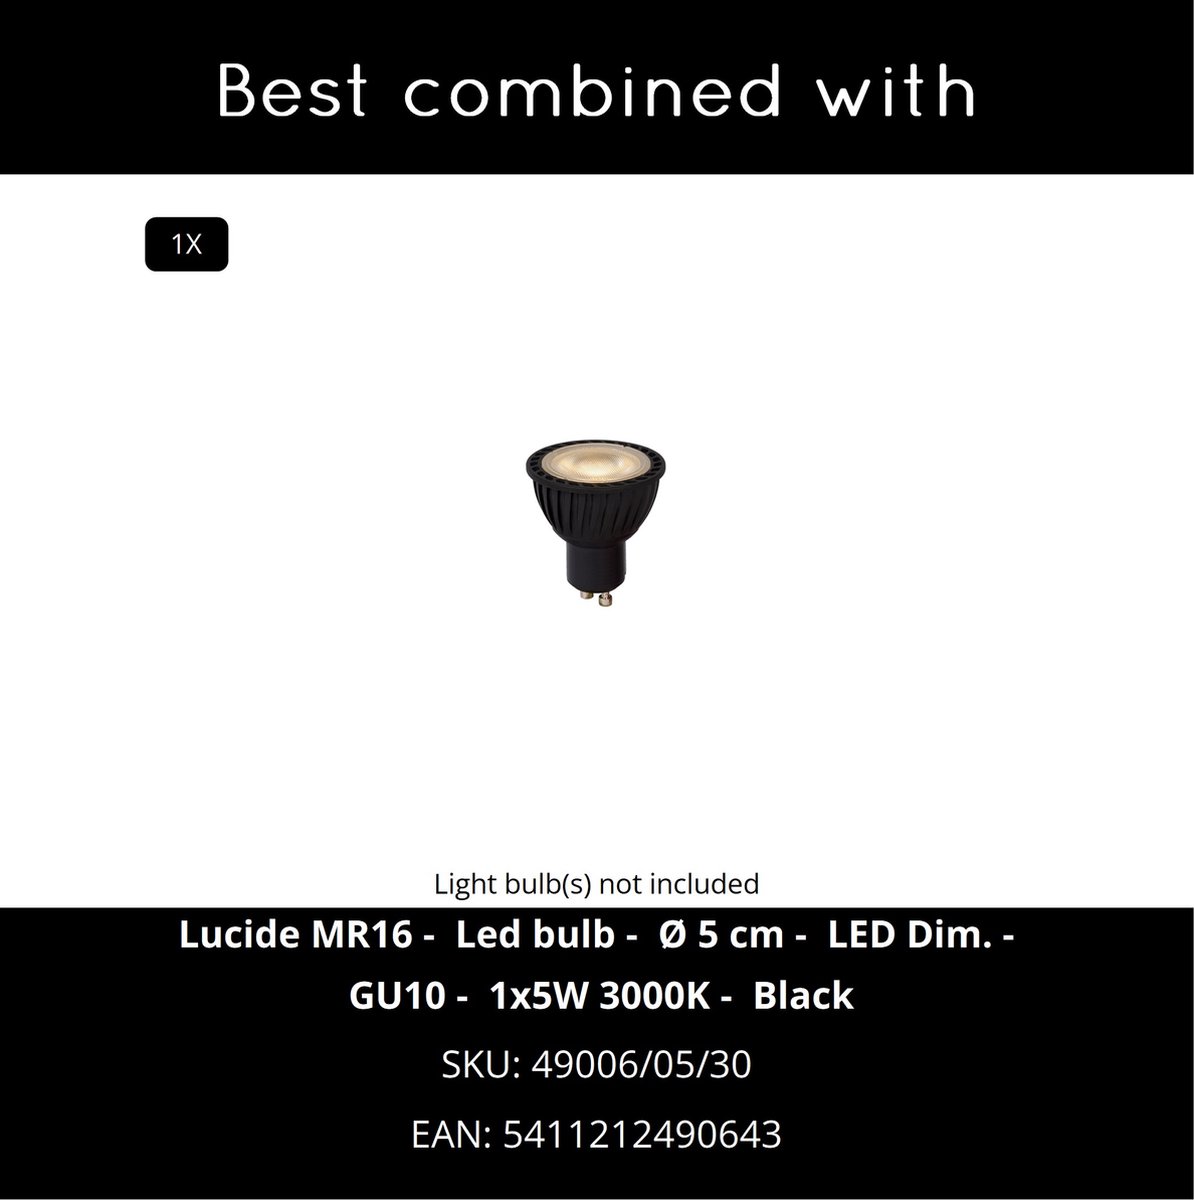 Borne extérieure LED, en aluminium noir LIAM H 20 cm